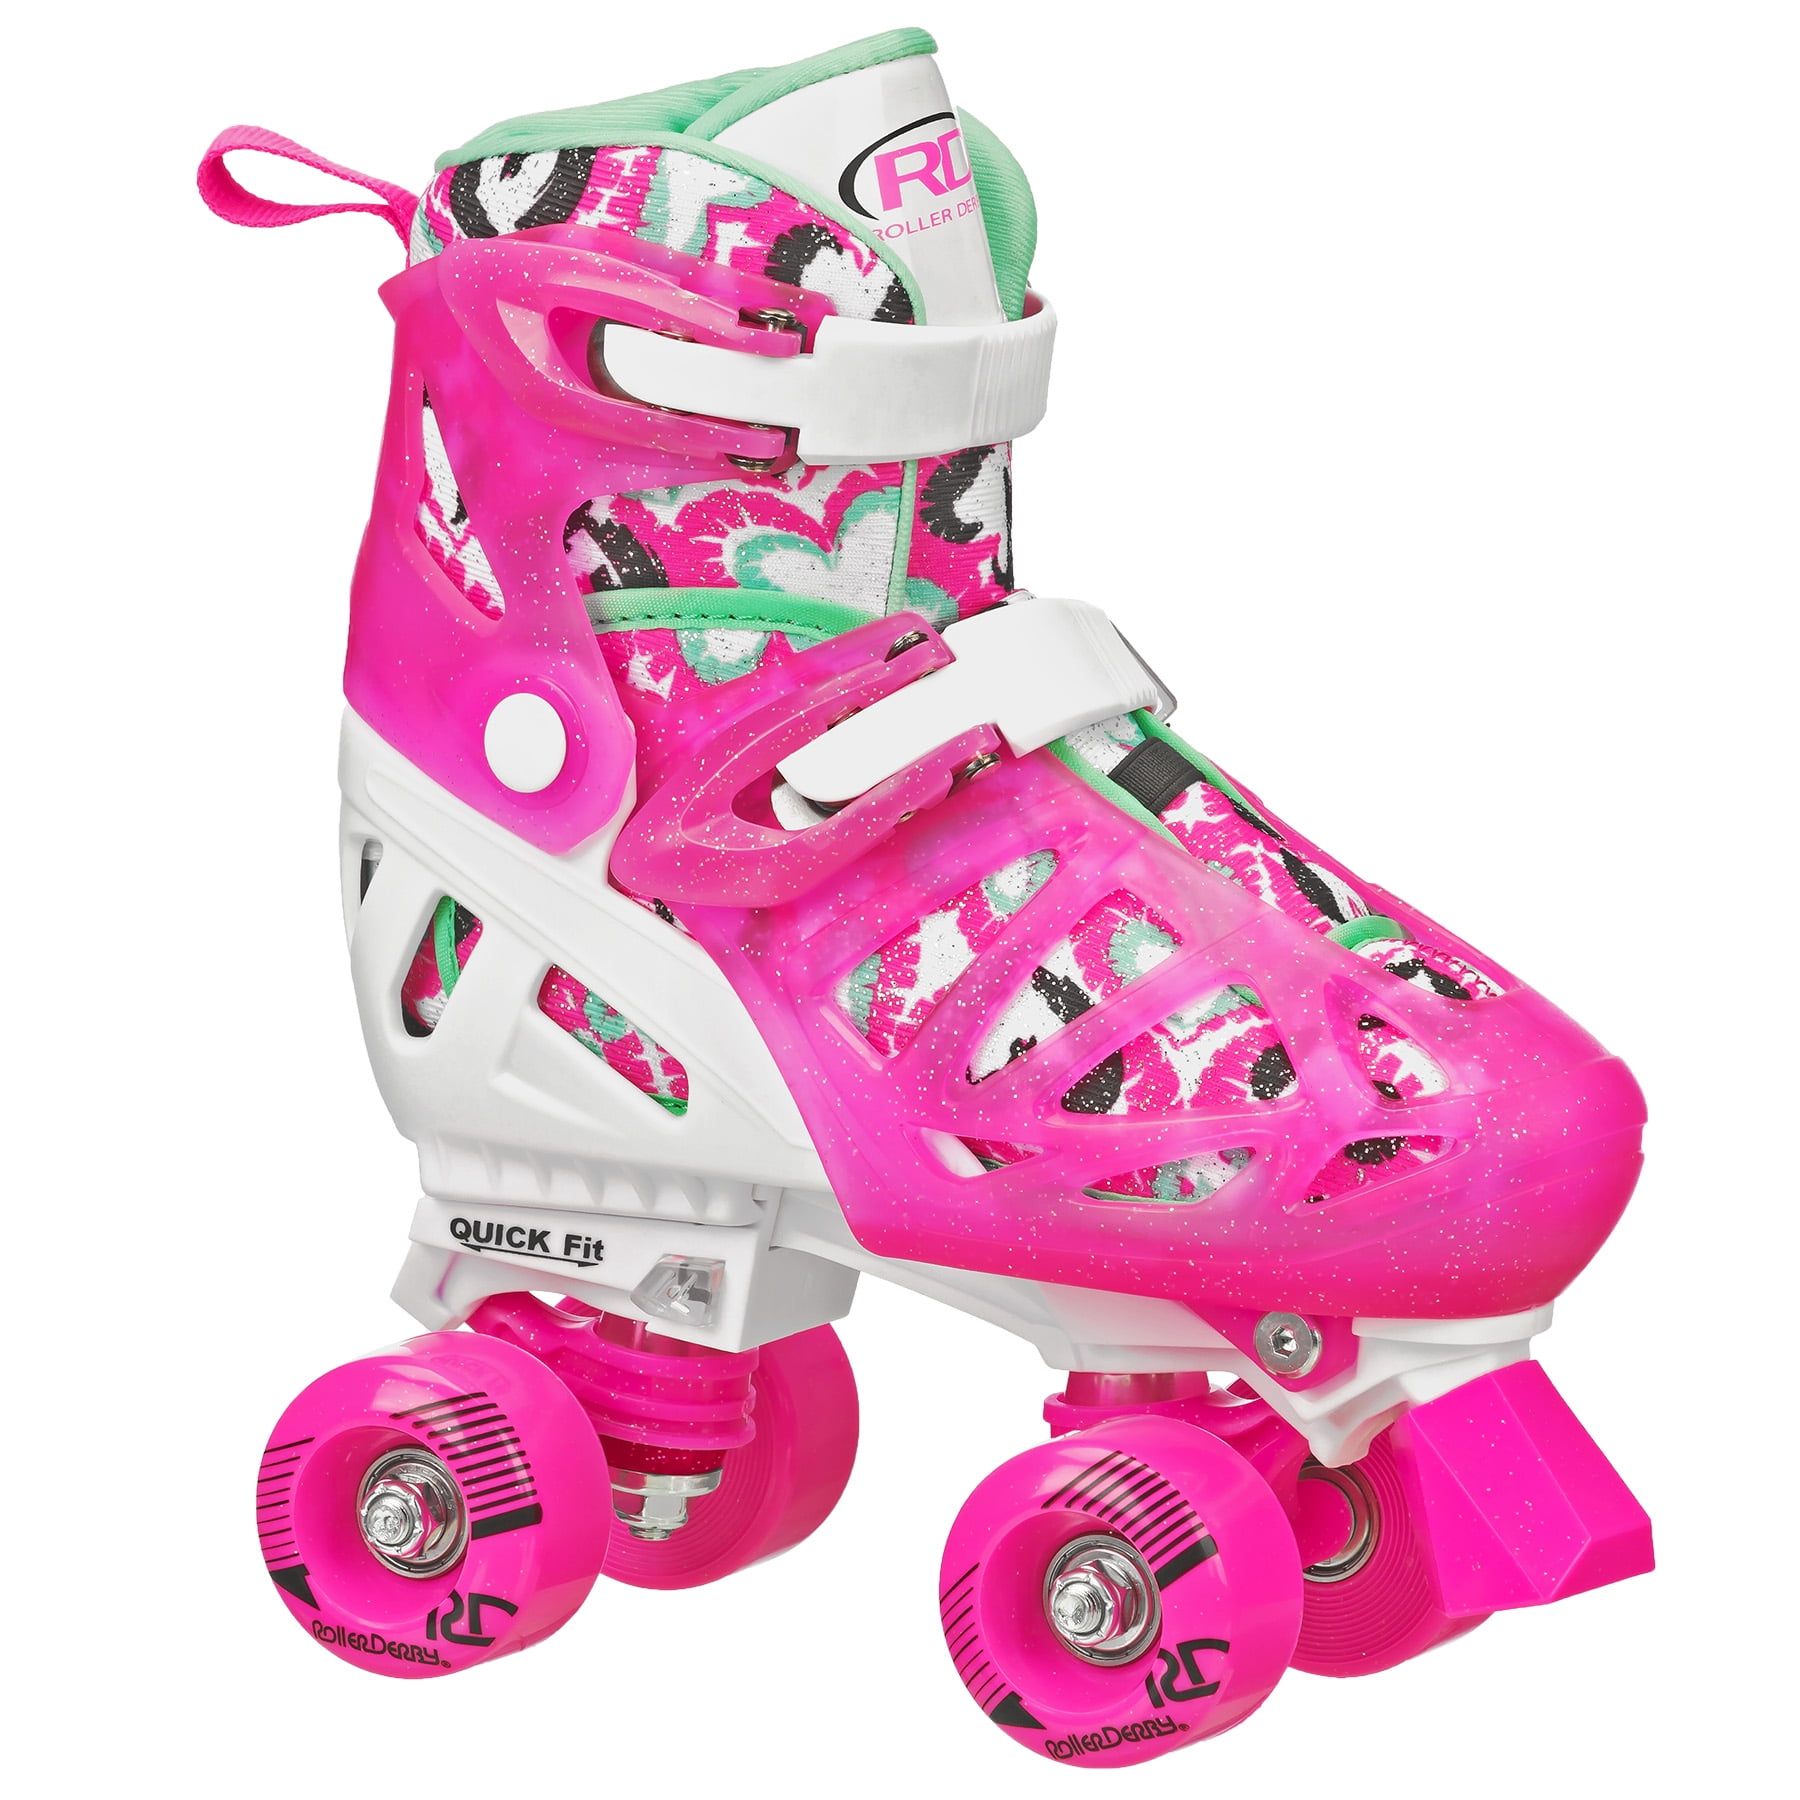 Roller Skates Adjustable Size for Kids/Adult 4 Wheels Children/Boys/Girls Pink 